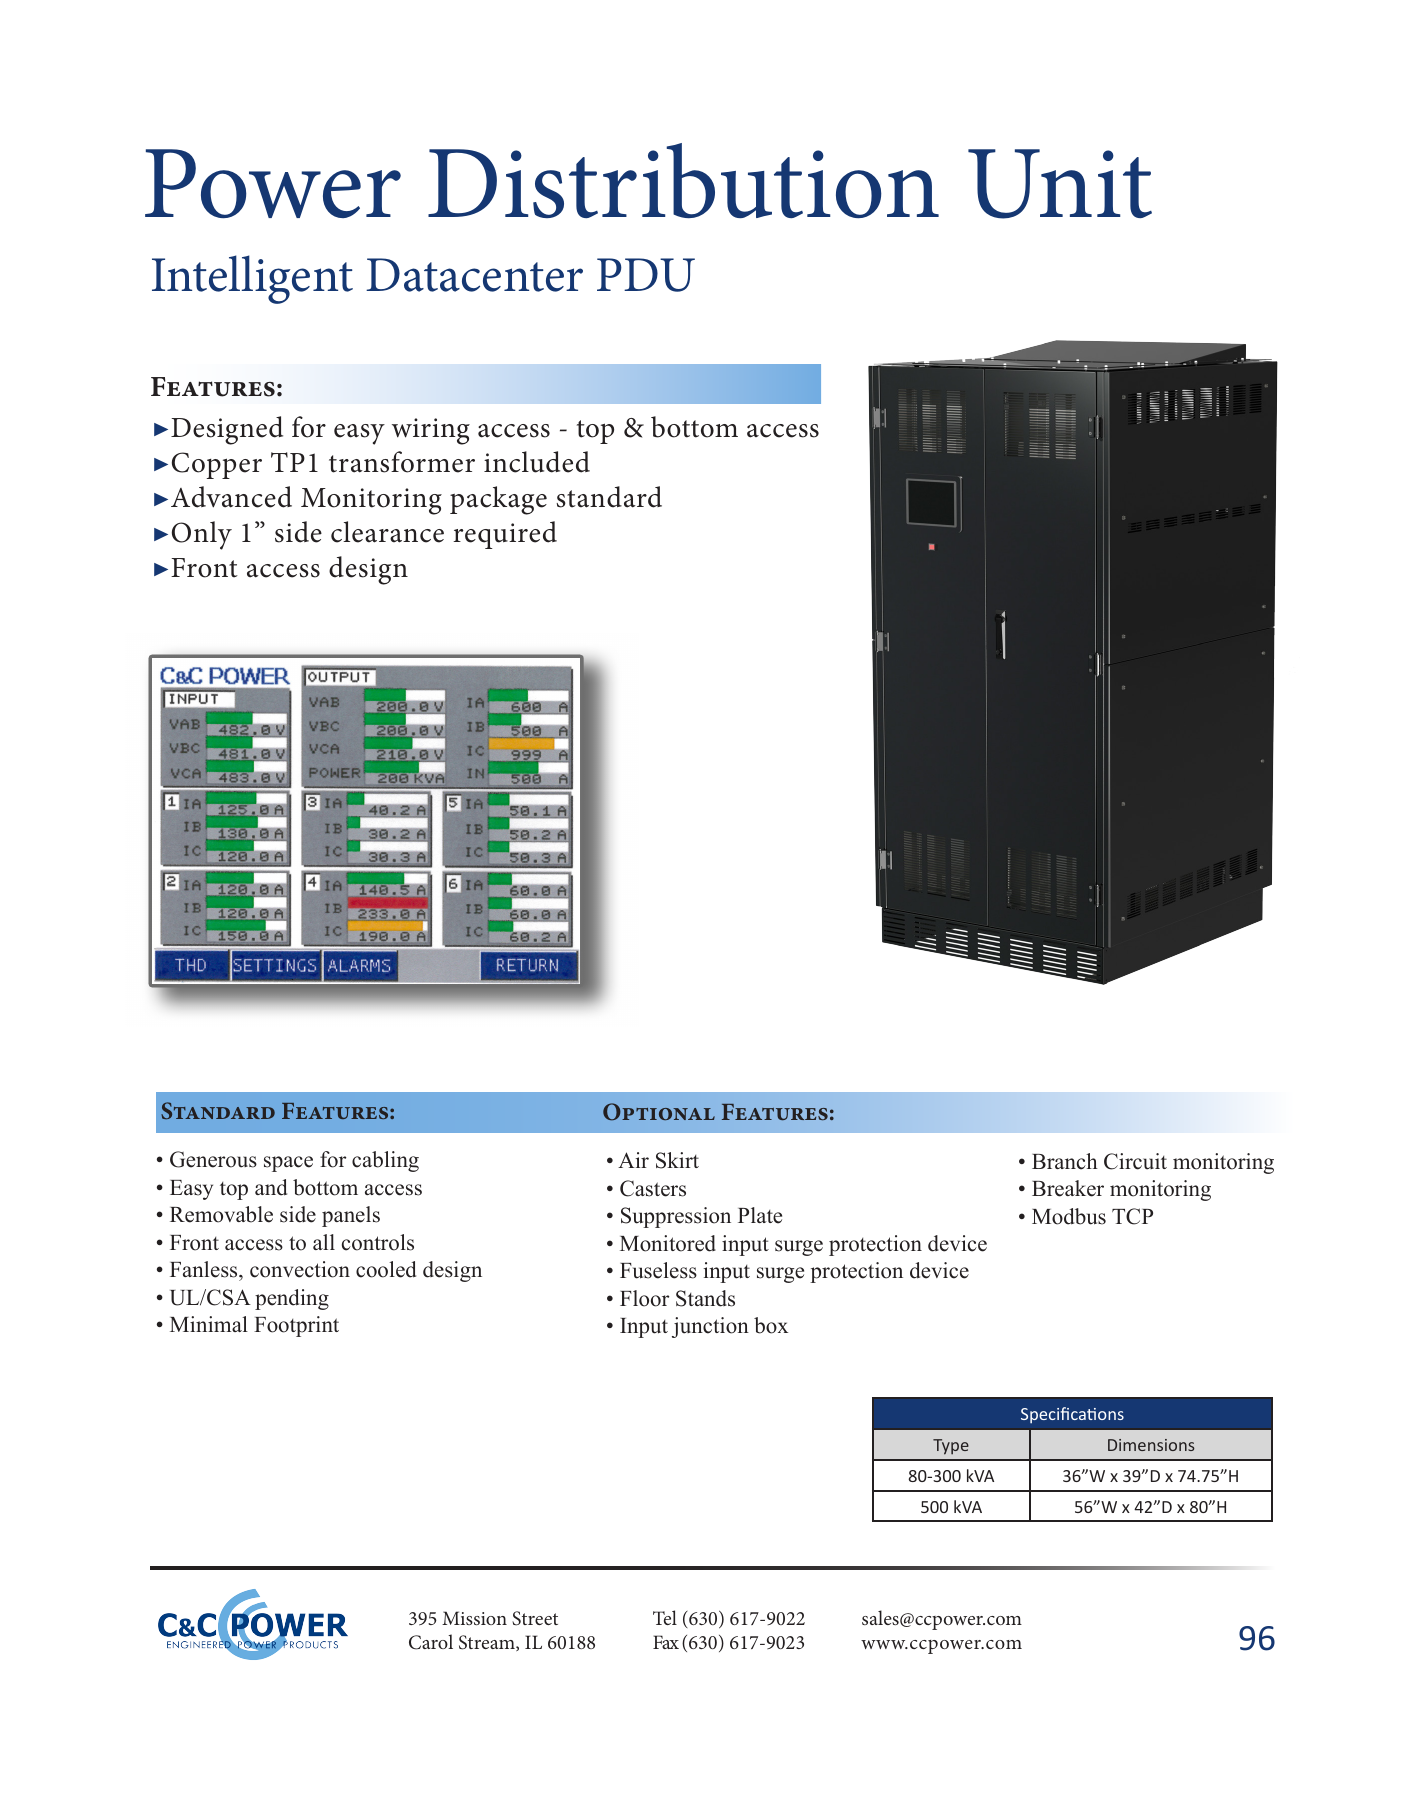 NUOVO Power Distribution Unit Type C-0130 4 VIE ORIZZONTALE libero consegna il giorno successivo 